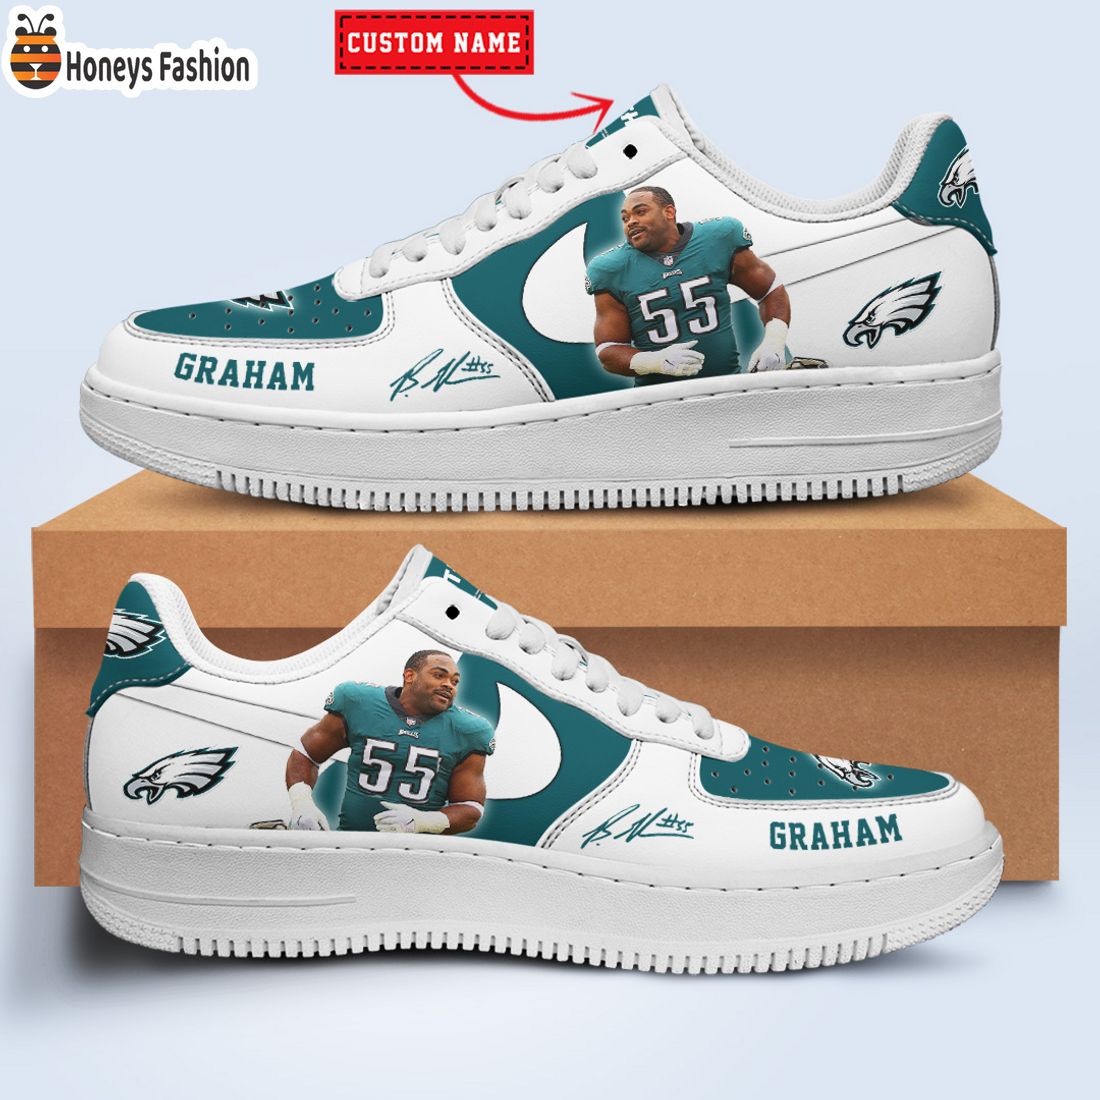 TOP SELLER Brandon Graham Philadelphia Eagles NFL Custom Name Nike Air Force Shoes